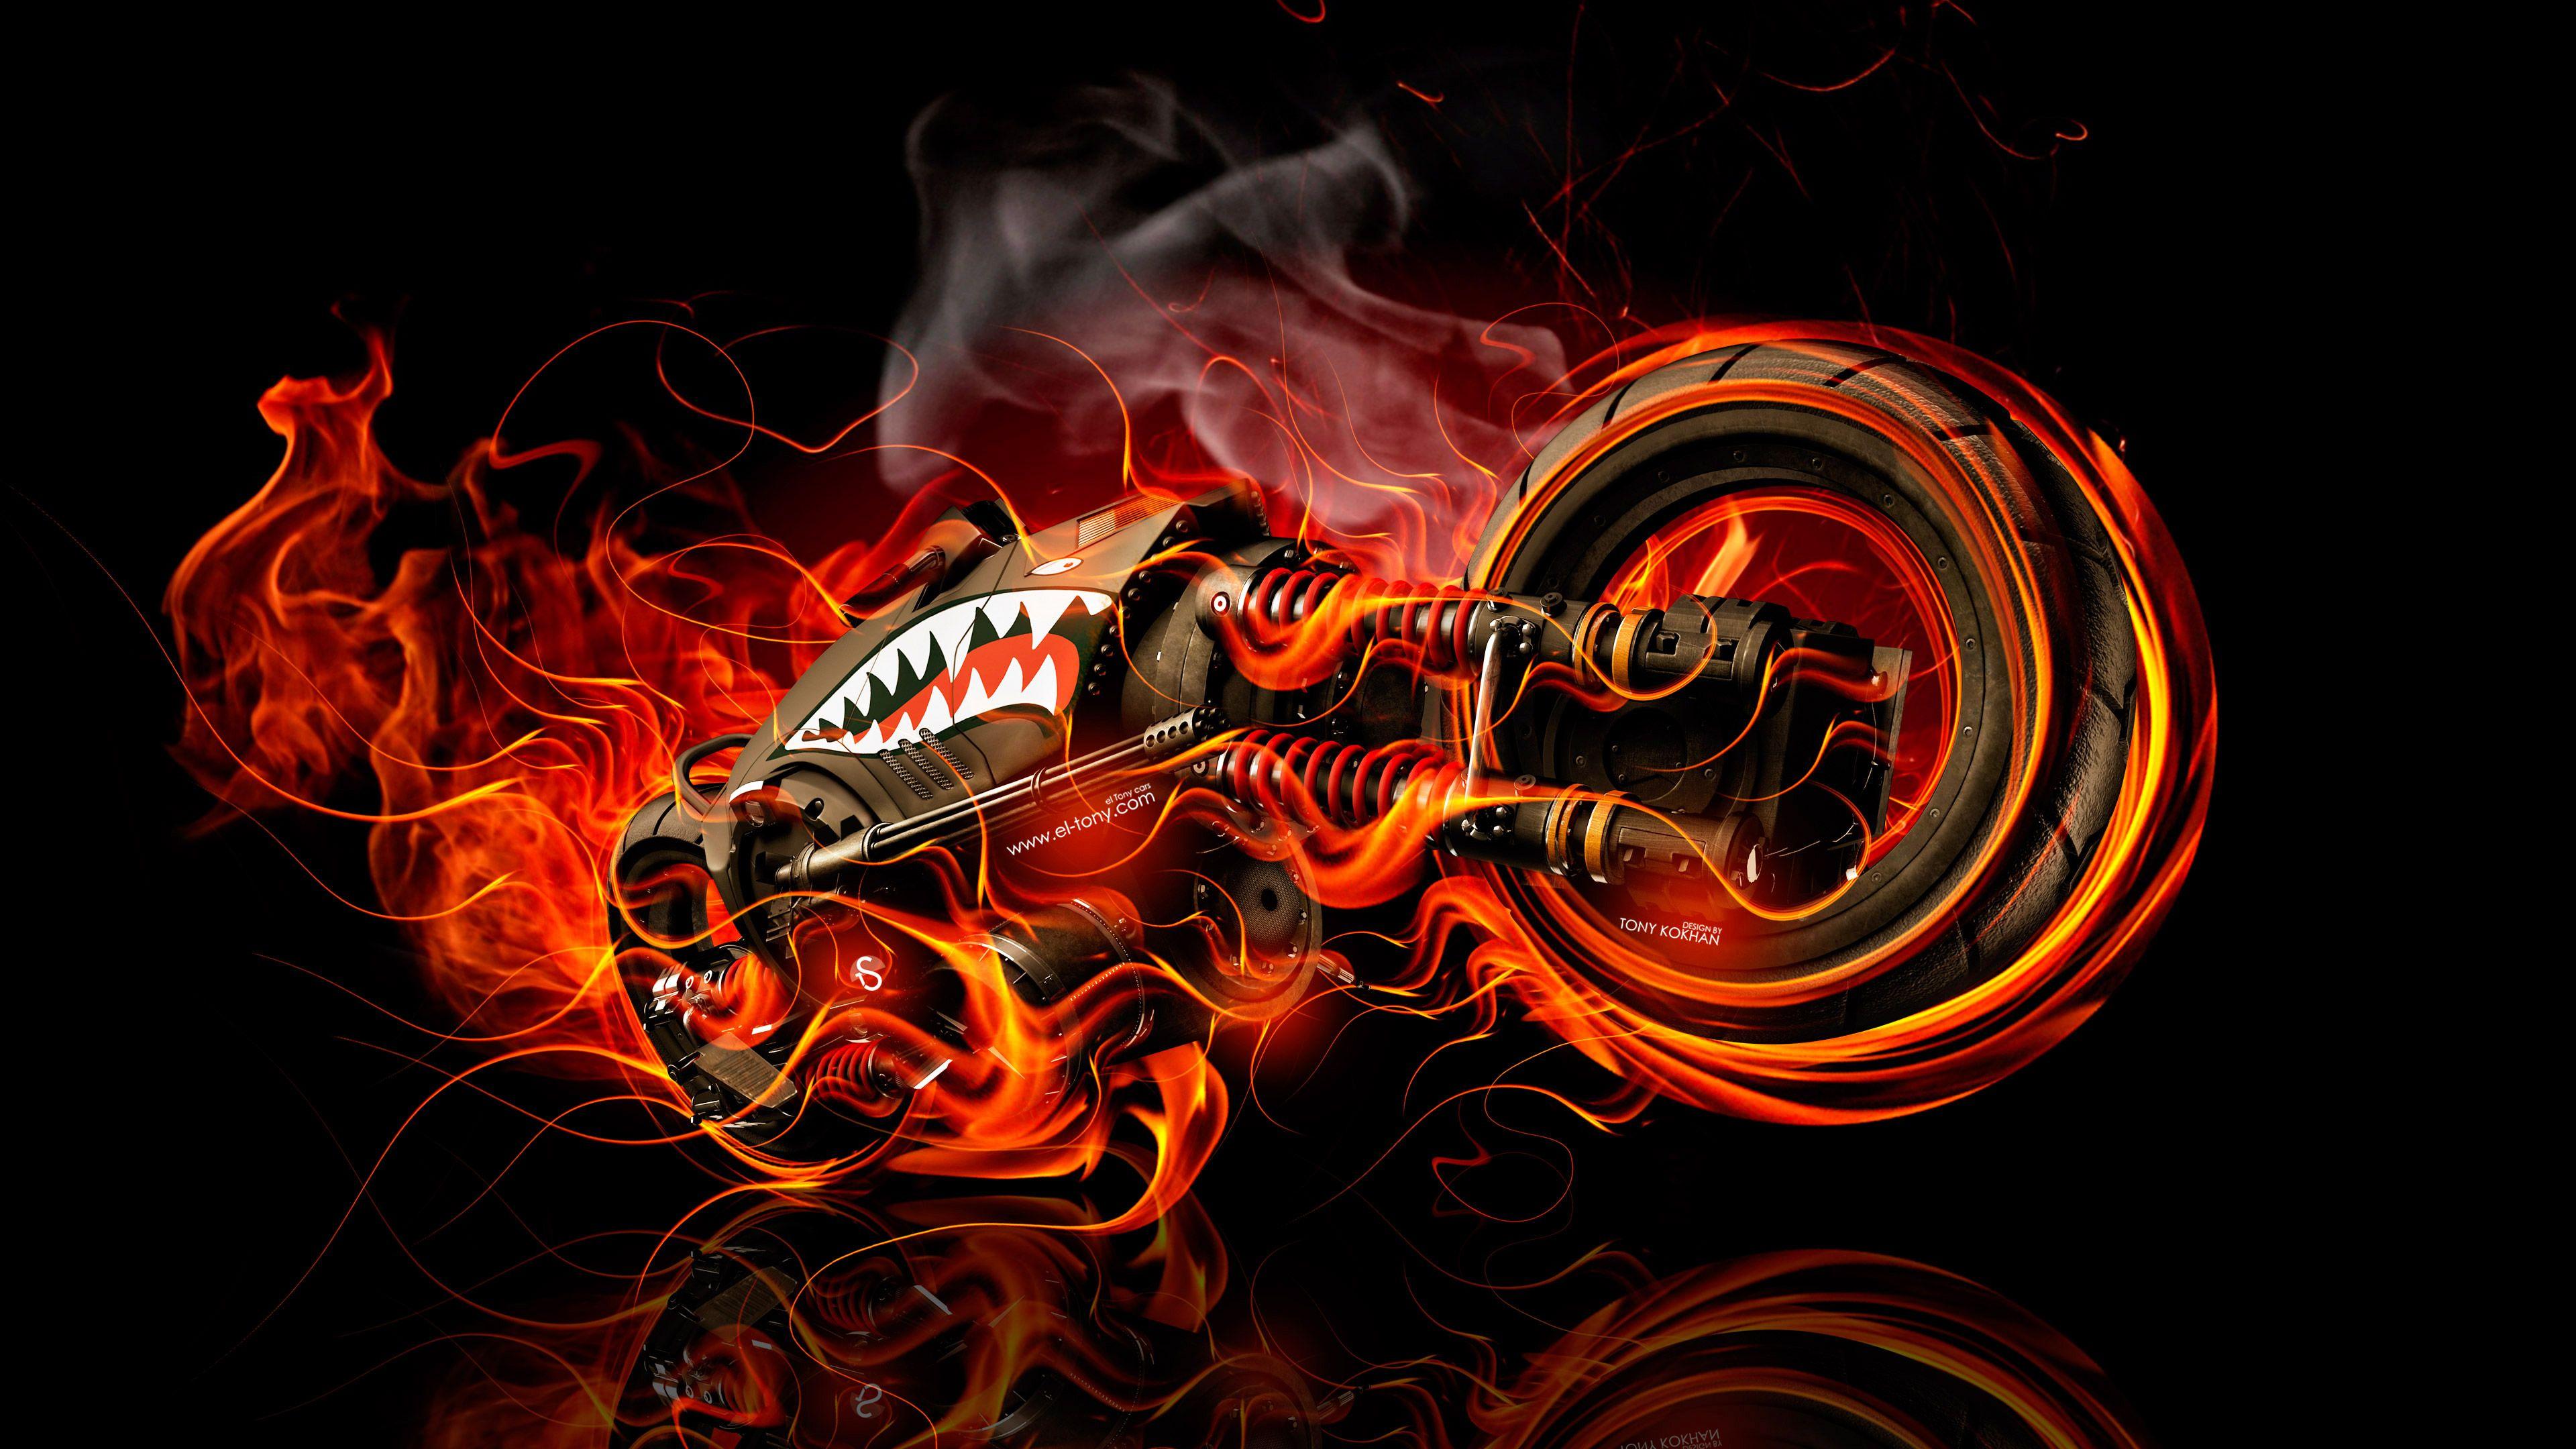 Moto Gun Super Fire Flame Abstract Bike 2016 Wallpaper 4K